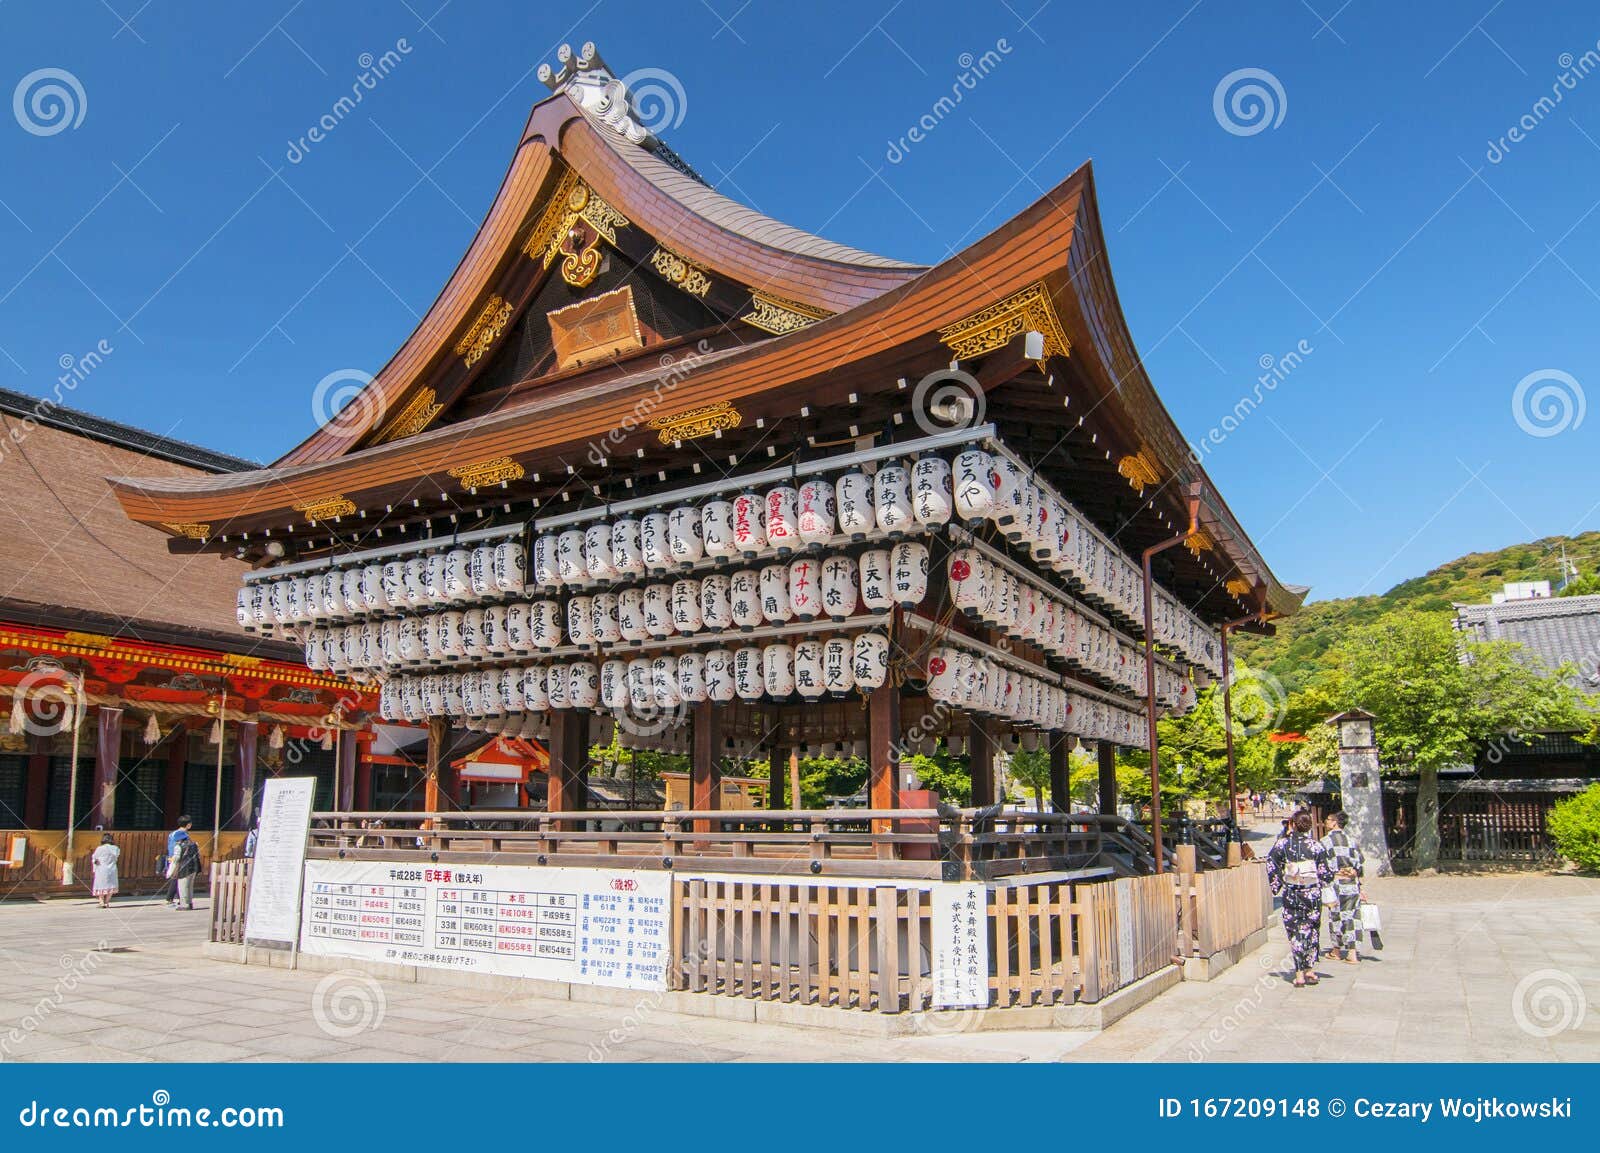 日本京都神社八坂神社 又名只园神社 是京都只园神社编辑类库存照片 图片包括有八坂神社 又名只园神社 是京都只园神社